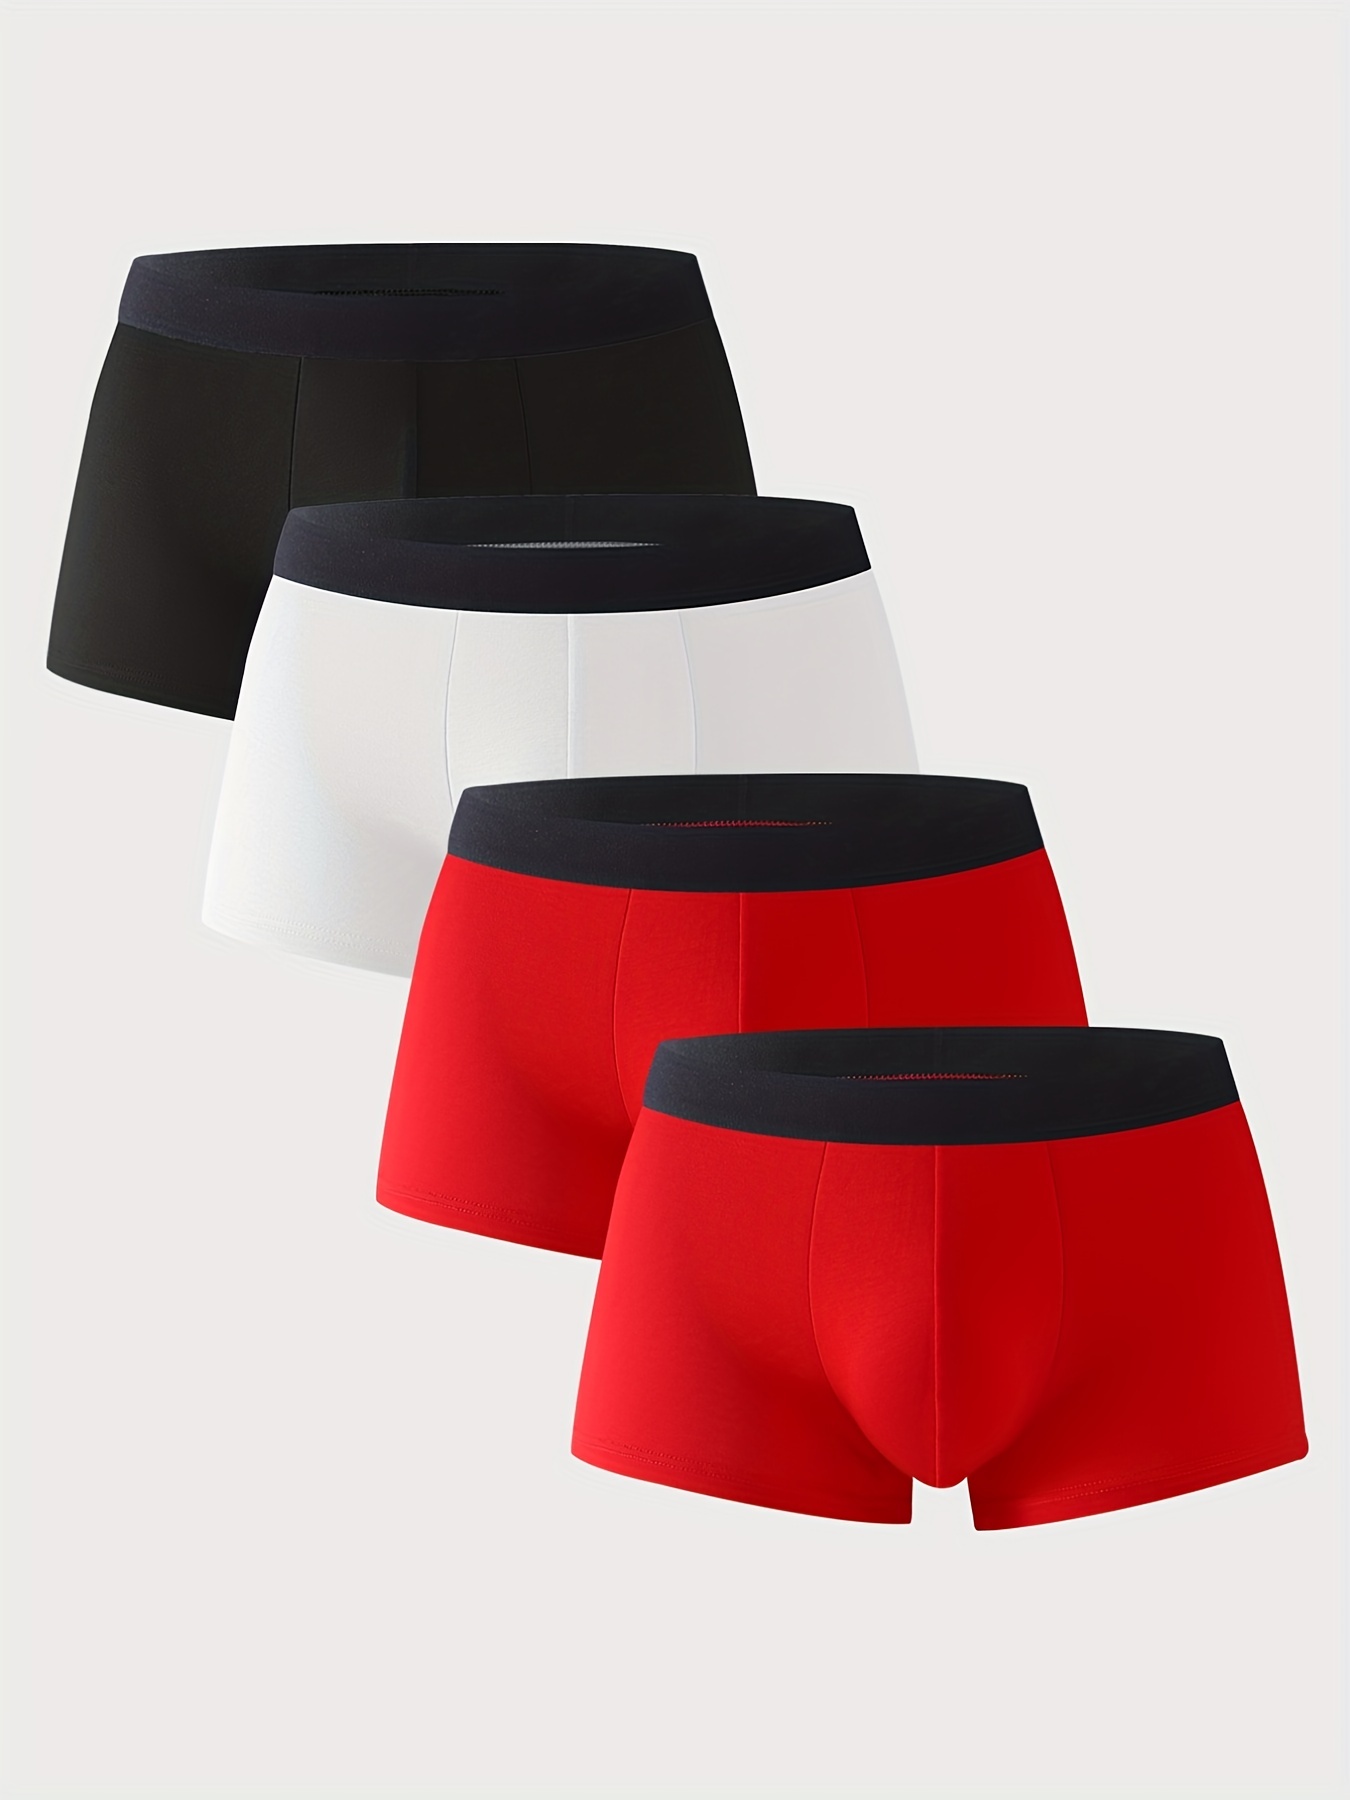 Cheap 4 Pcs Red Color Men Underwear Cotton Boxers Shorts